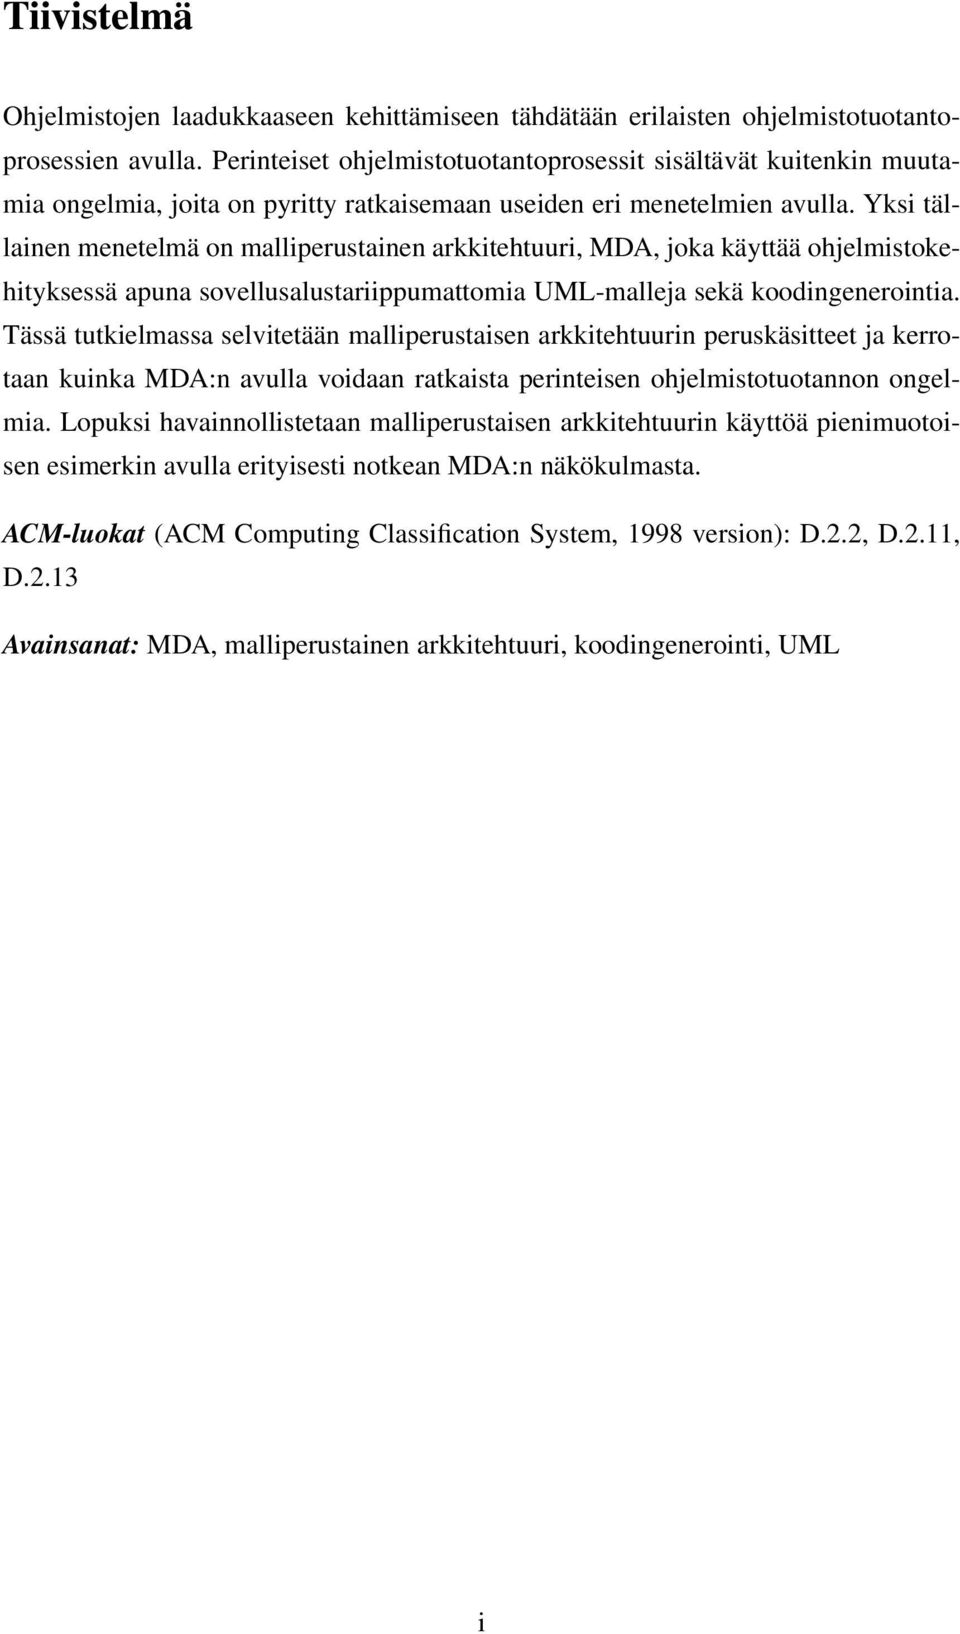 Yksi tällainen menetelmä on malliperustainen arkkitehtuuri, MDA, joka käyttää ohjelmistokehityksessä apuna sovellusalustariippumattomia UML-malleja sekä koodingenerointia.